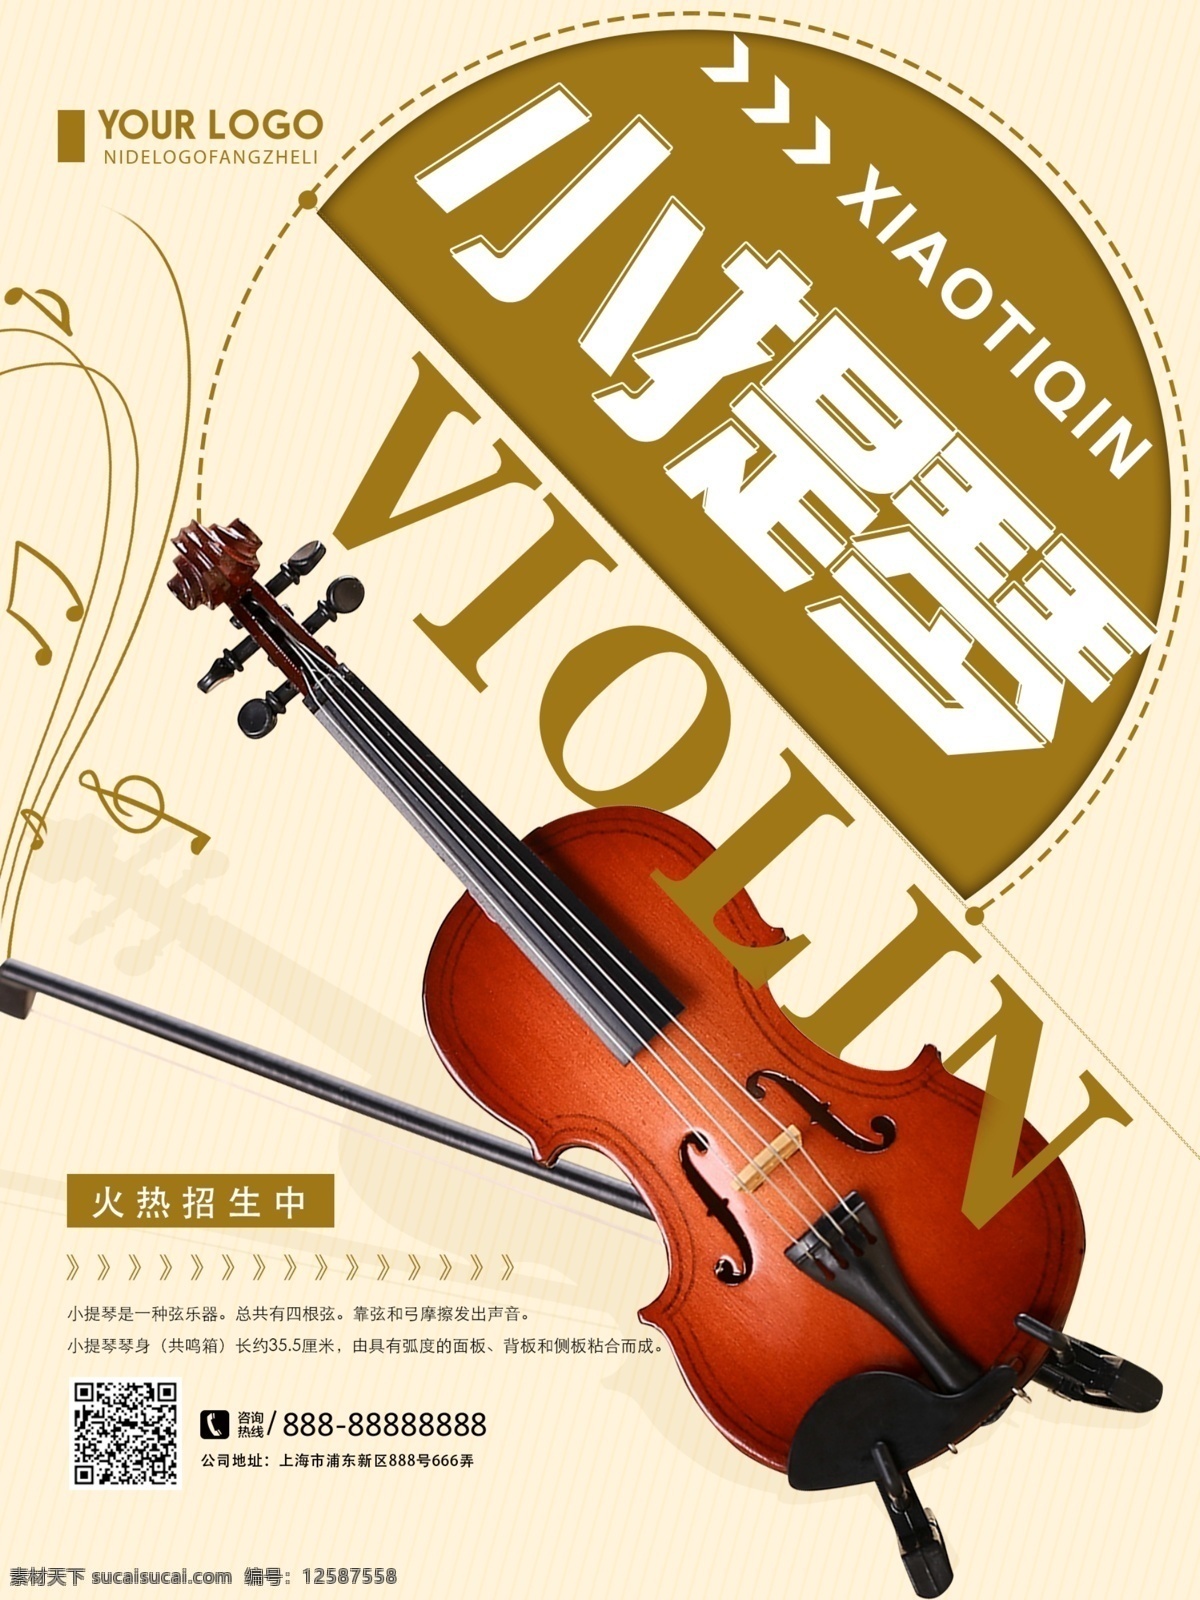 创意 简约 小提琴 乐器 招生 宣传海报 小提琴培训 乐器培训海报 乐器培训招生 培训